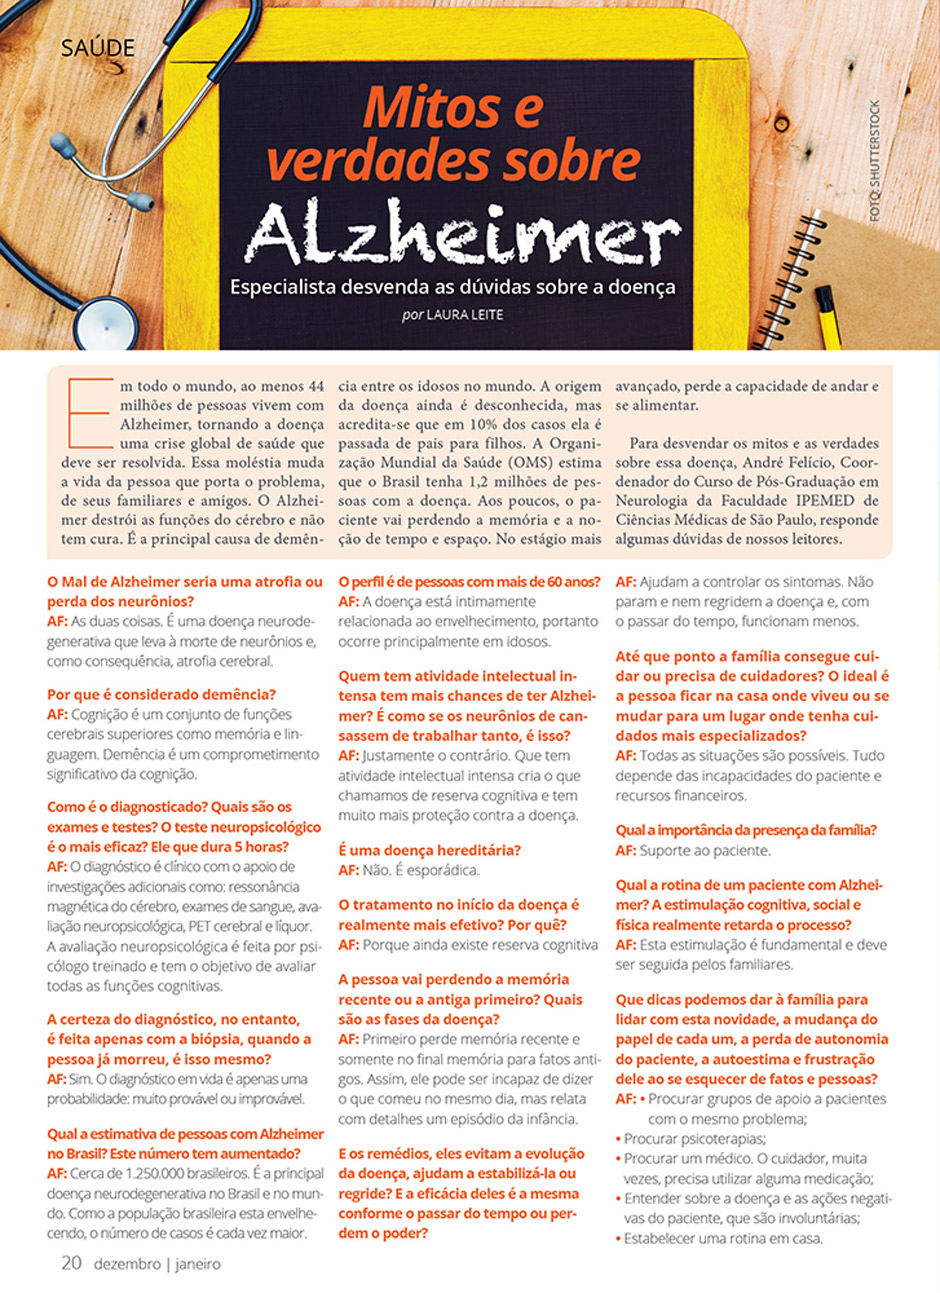 Mitos e verdades sobre Alzheimer